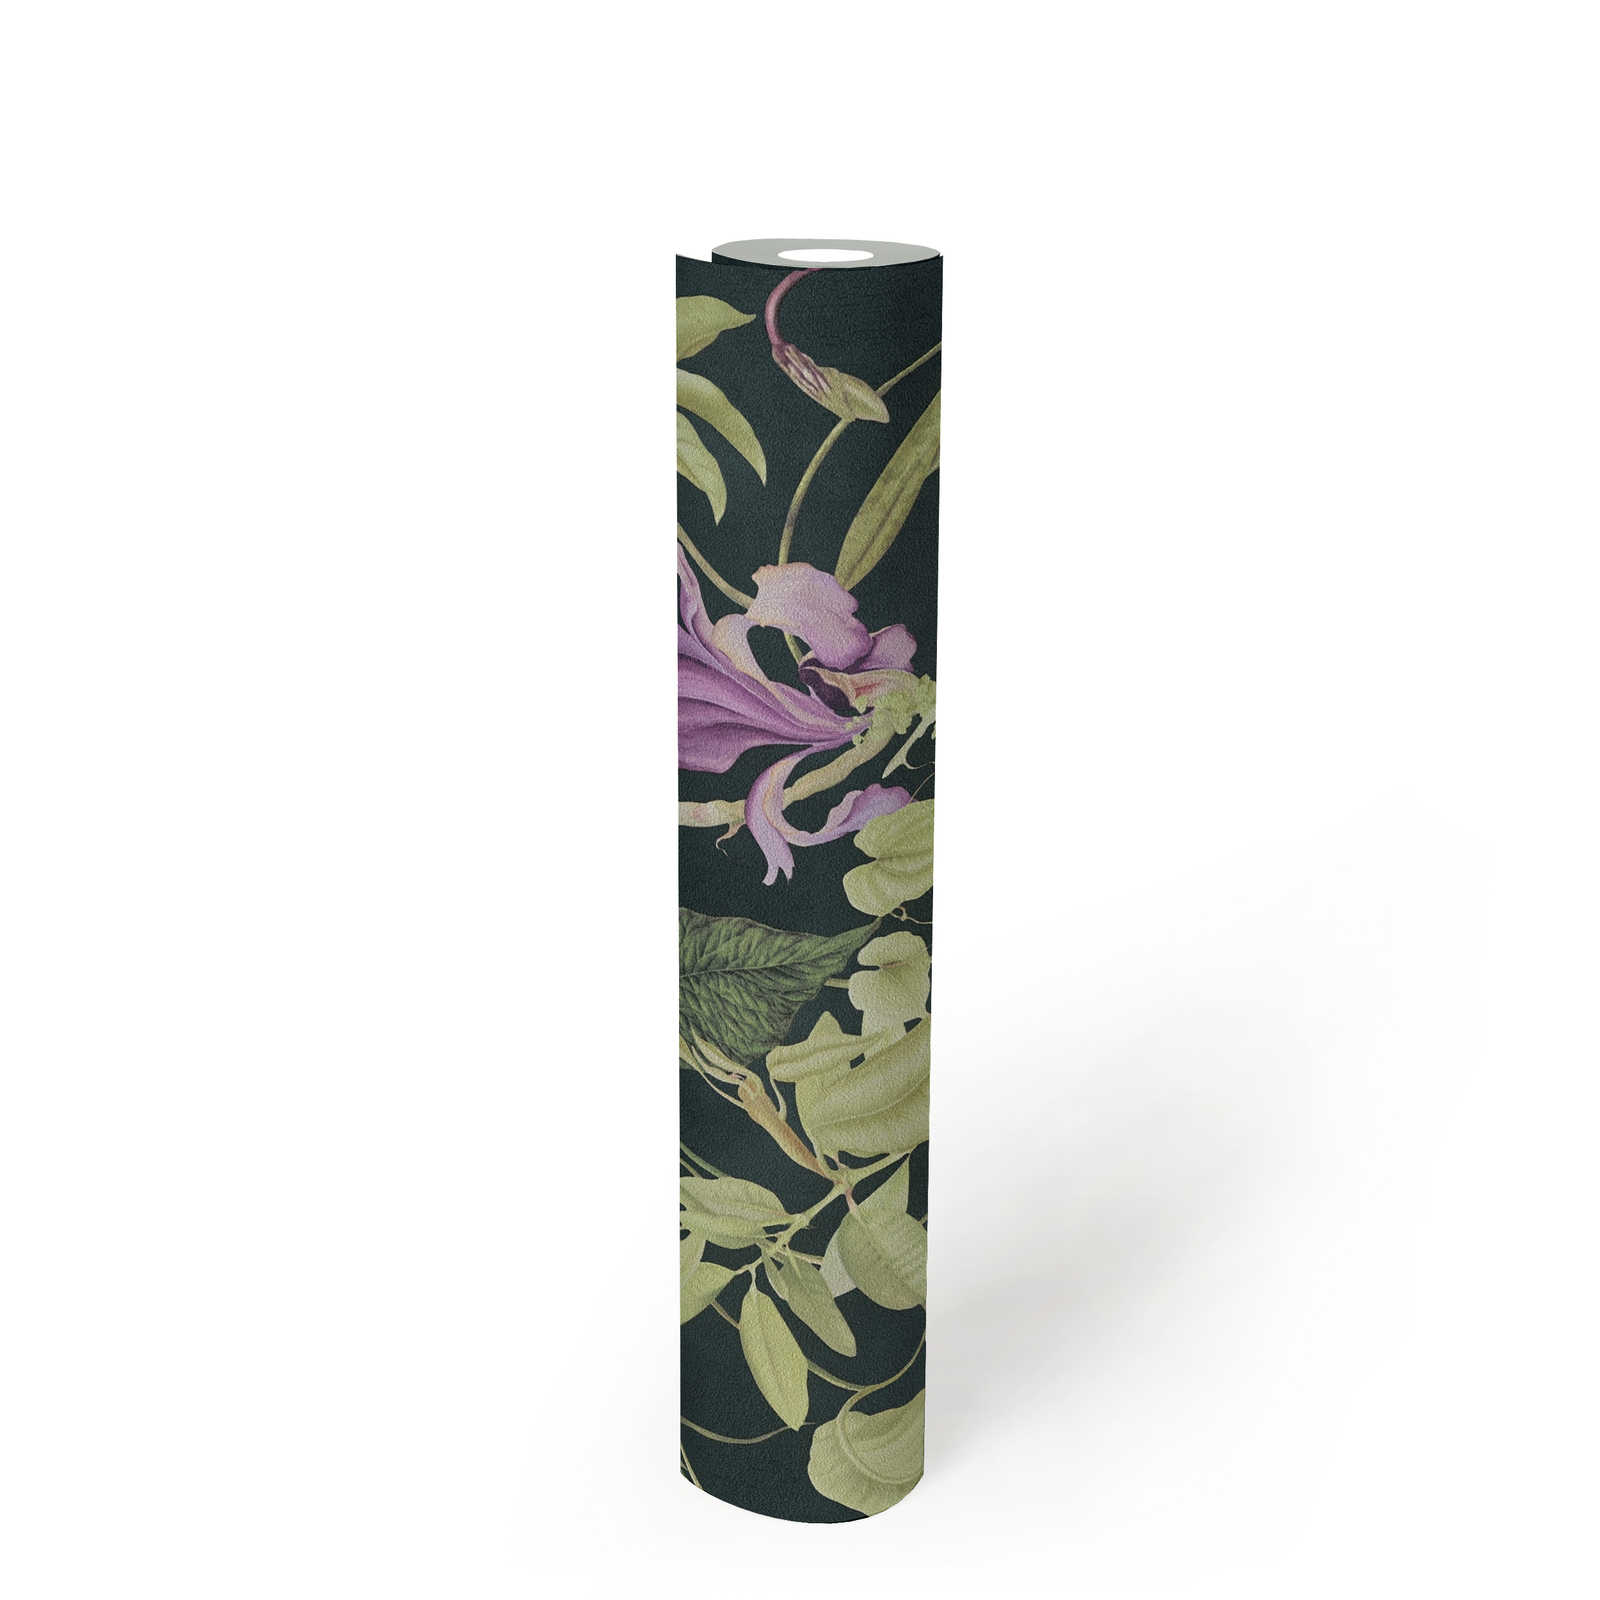             Tropische Blumentapete Design by MICHALSKY – Grün, Schwarz
        